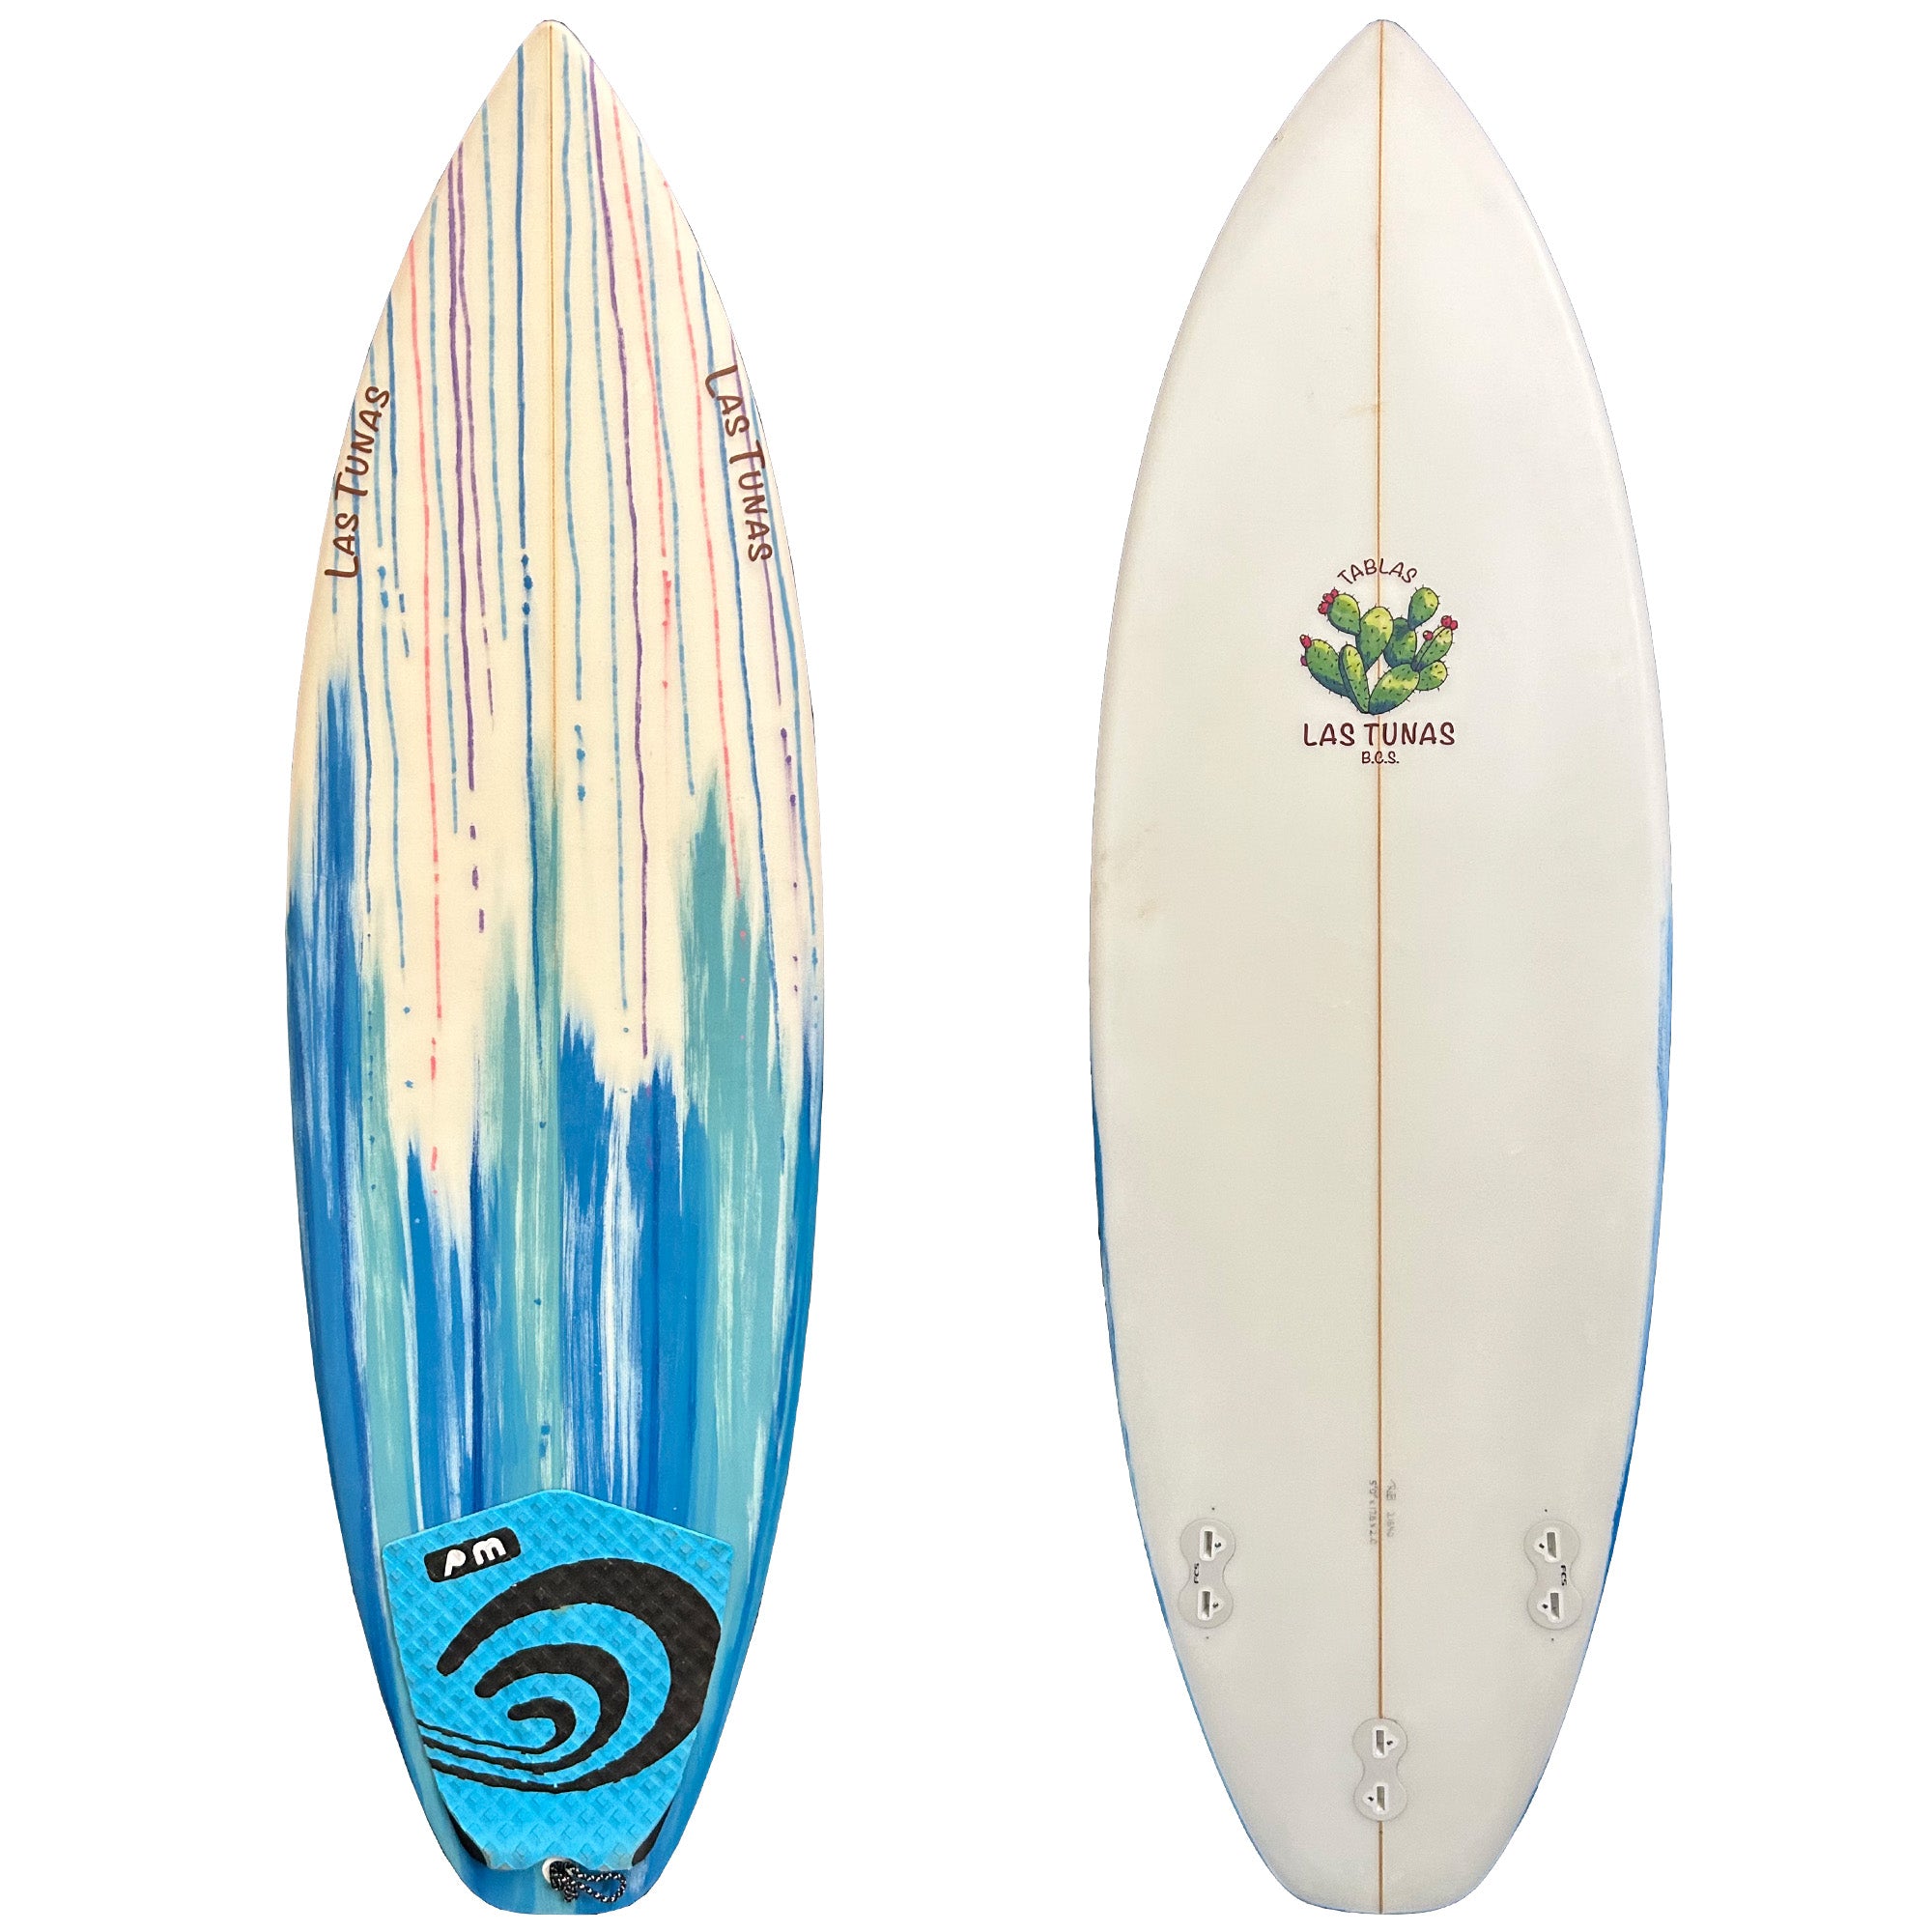 Las Tunas 5' Consignment Surfboard